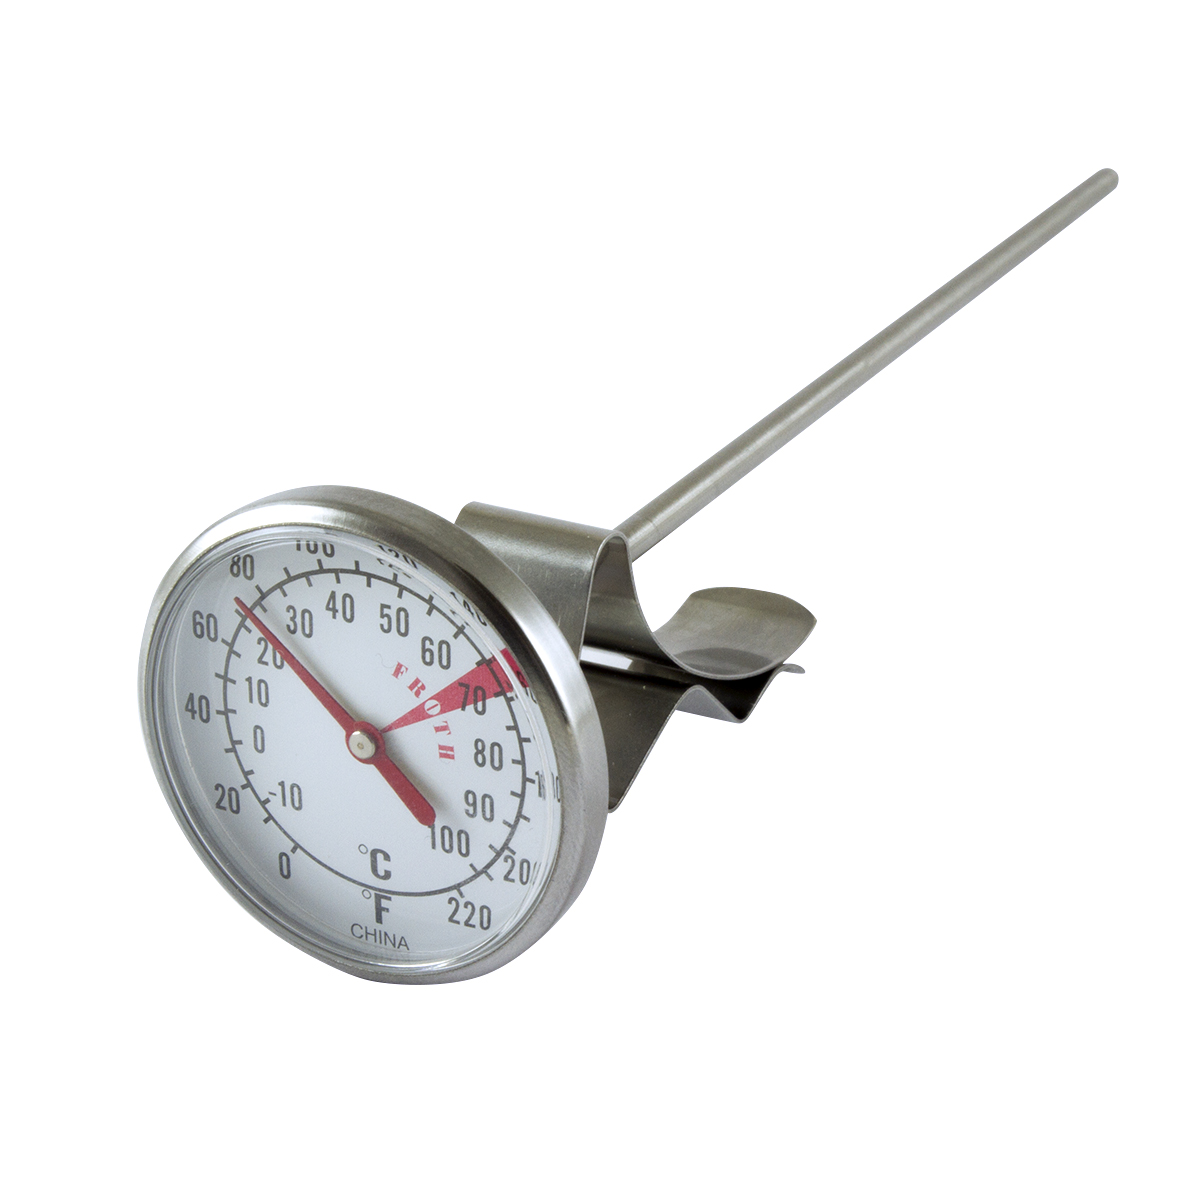 Dual-Thermometer Celsius/Fahrenheit